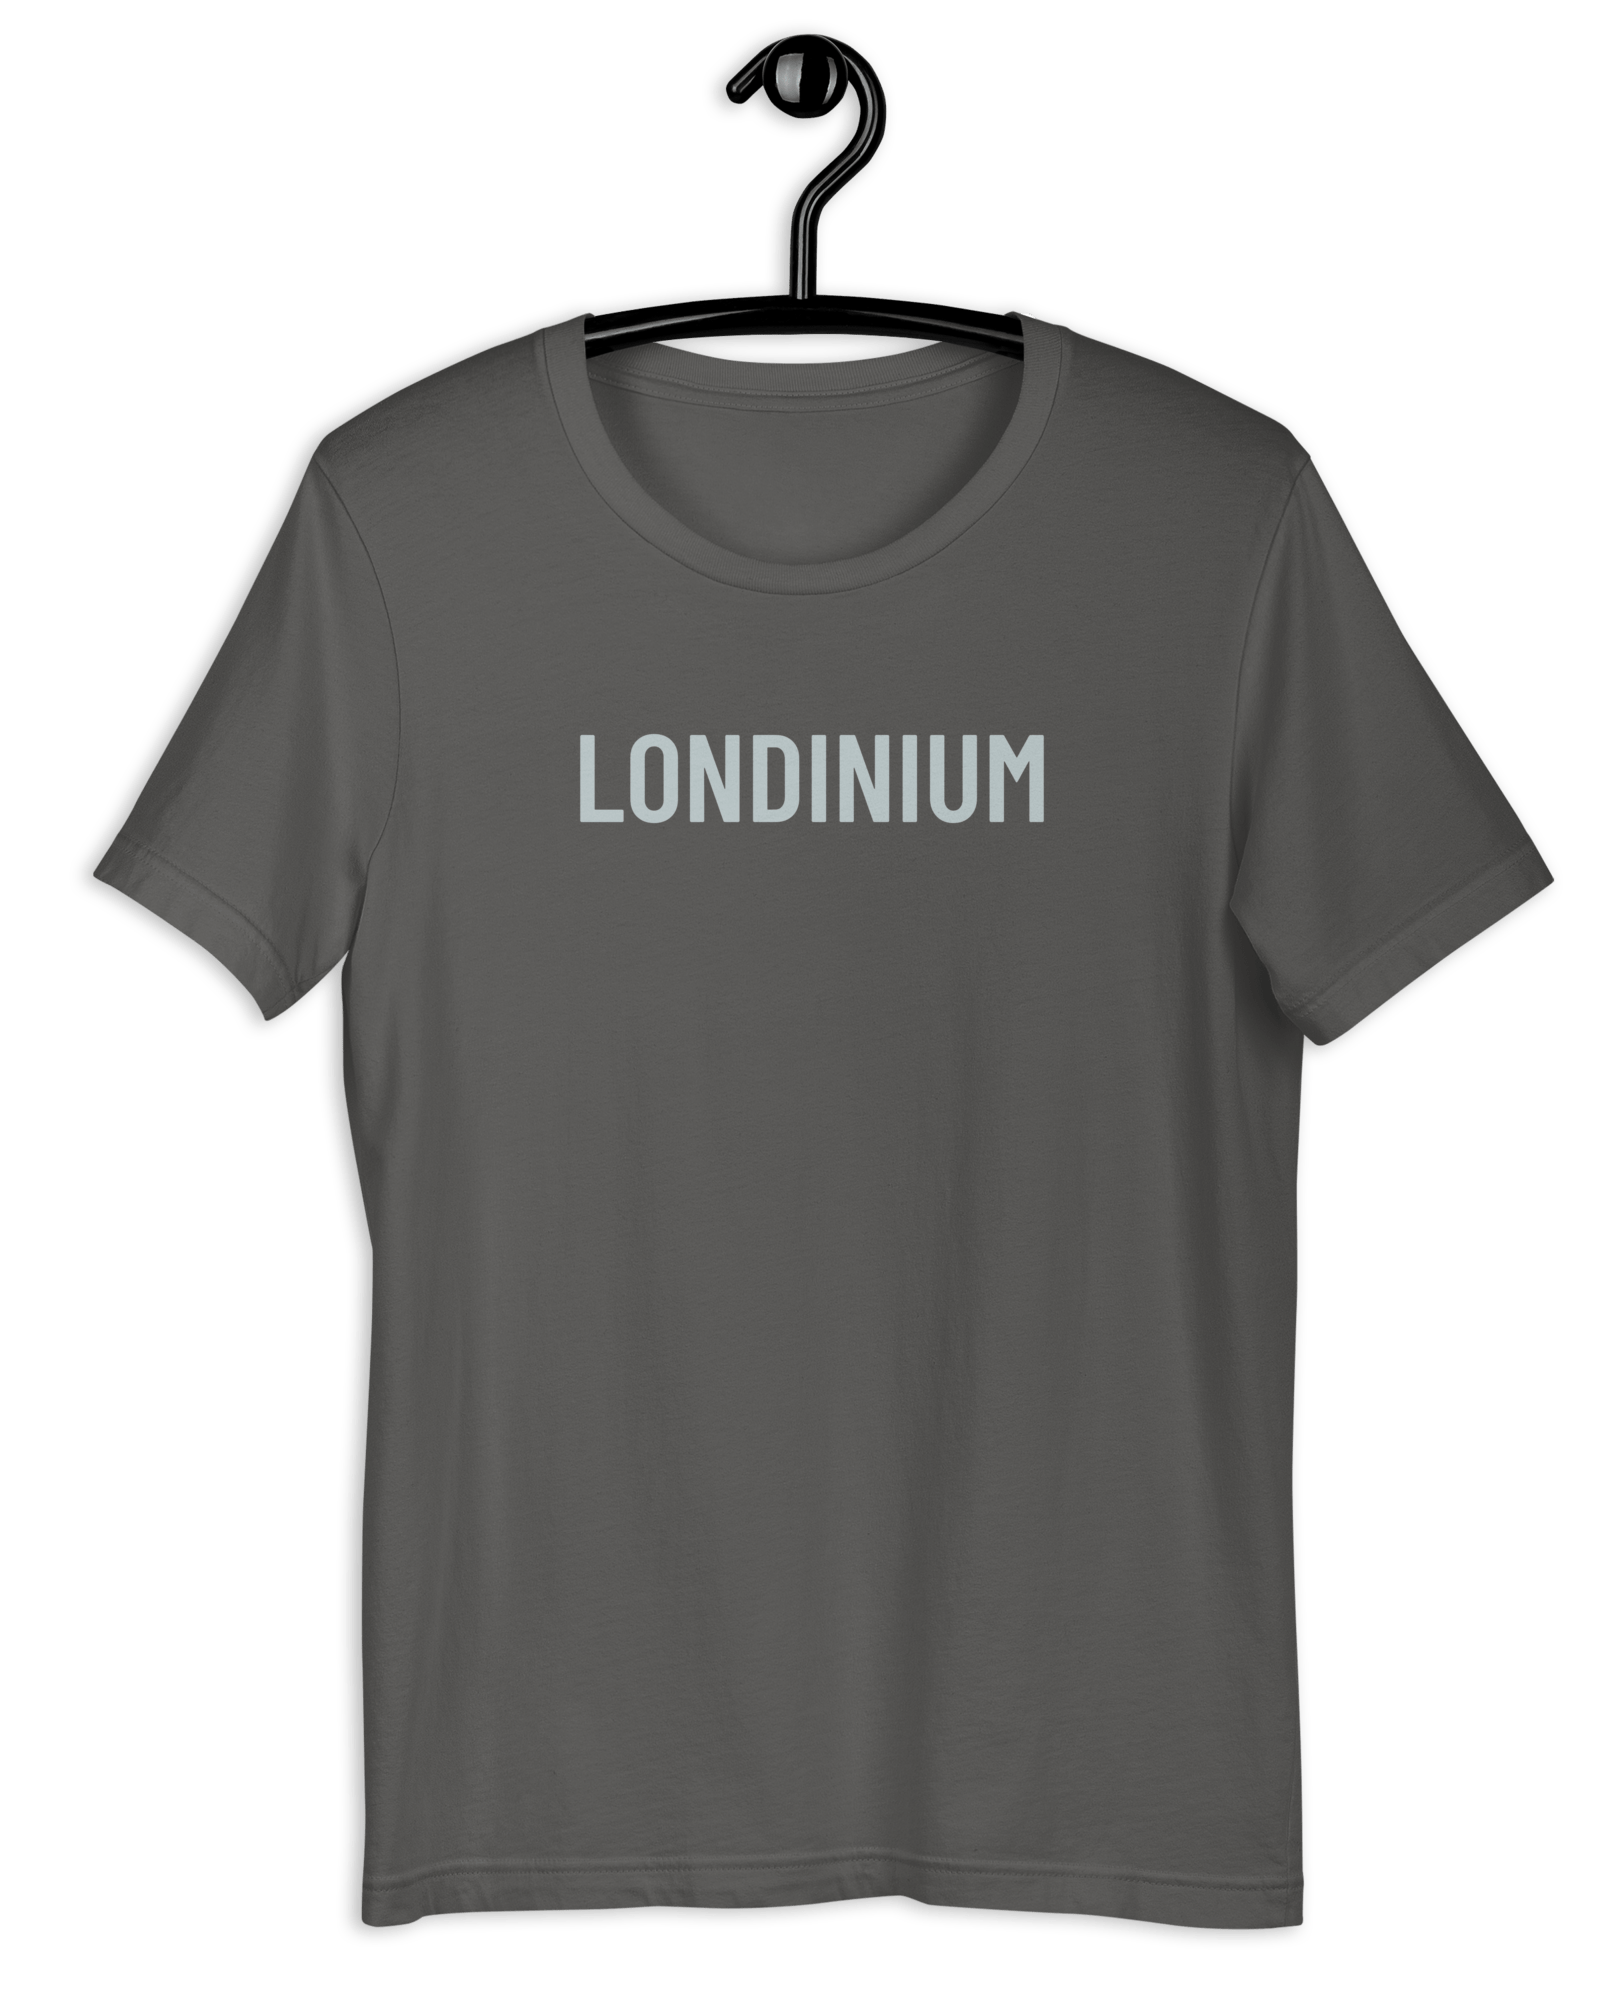 Londinium T-Shirt Asphalt / S Shirts & Tops Jolly & Goode